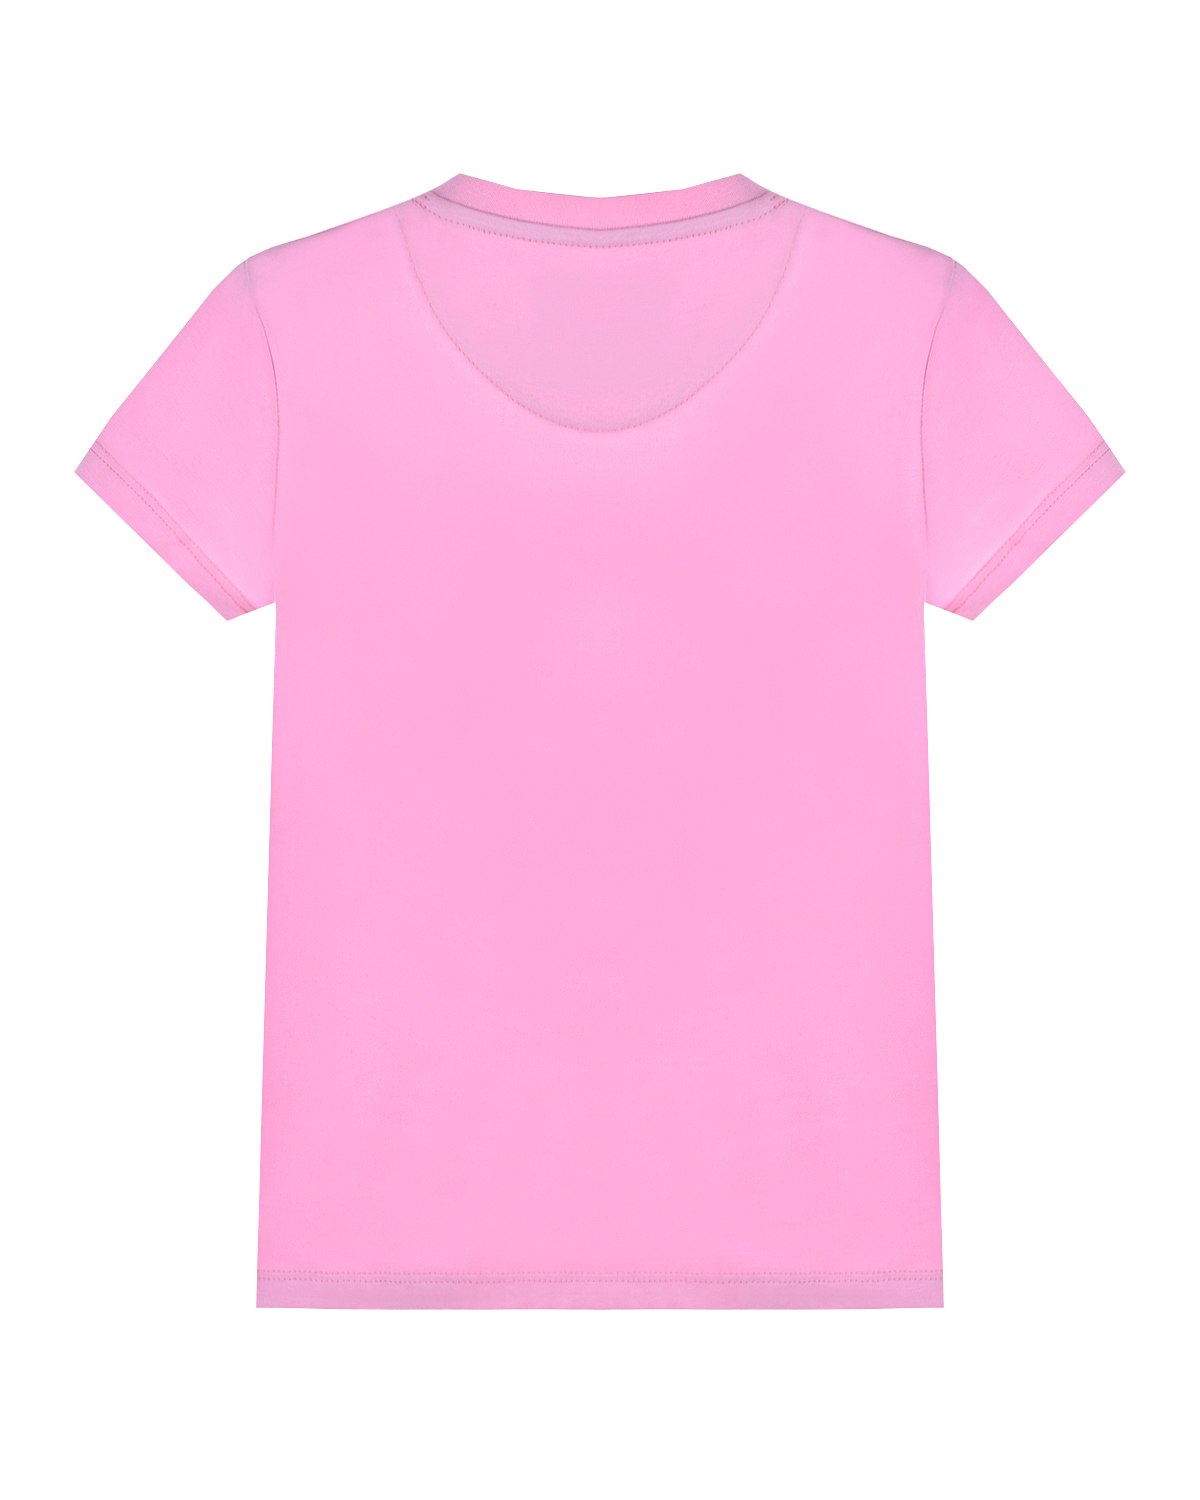 Розовая футболка для девочки. Футболка розовая Philipp plein. Розовая майка. Футболка розовая цвет. Розовая футболка женская.